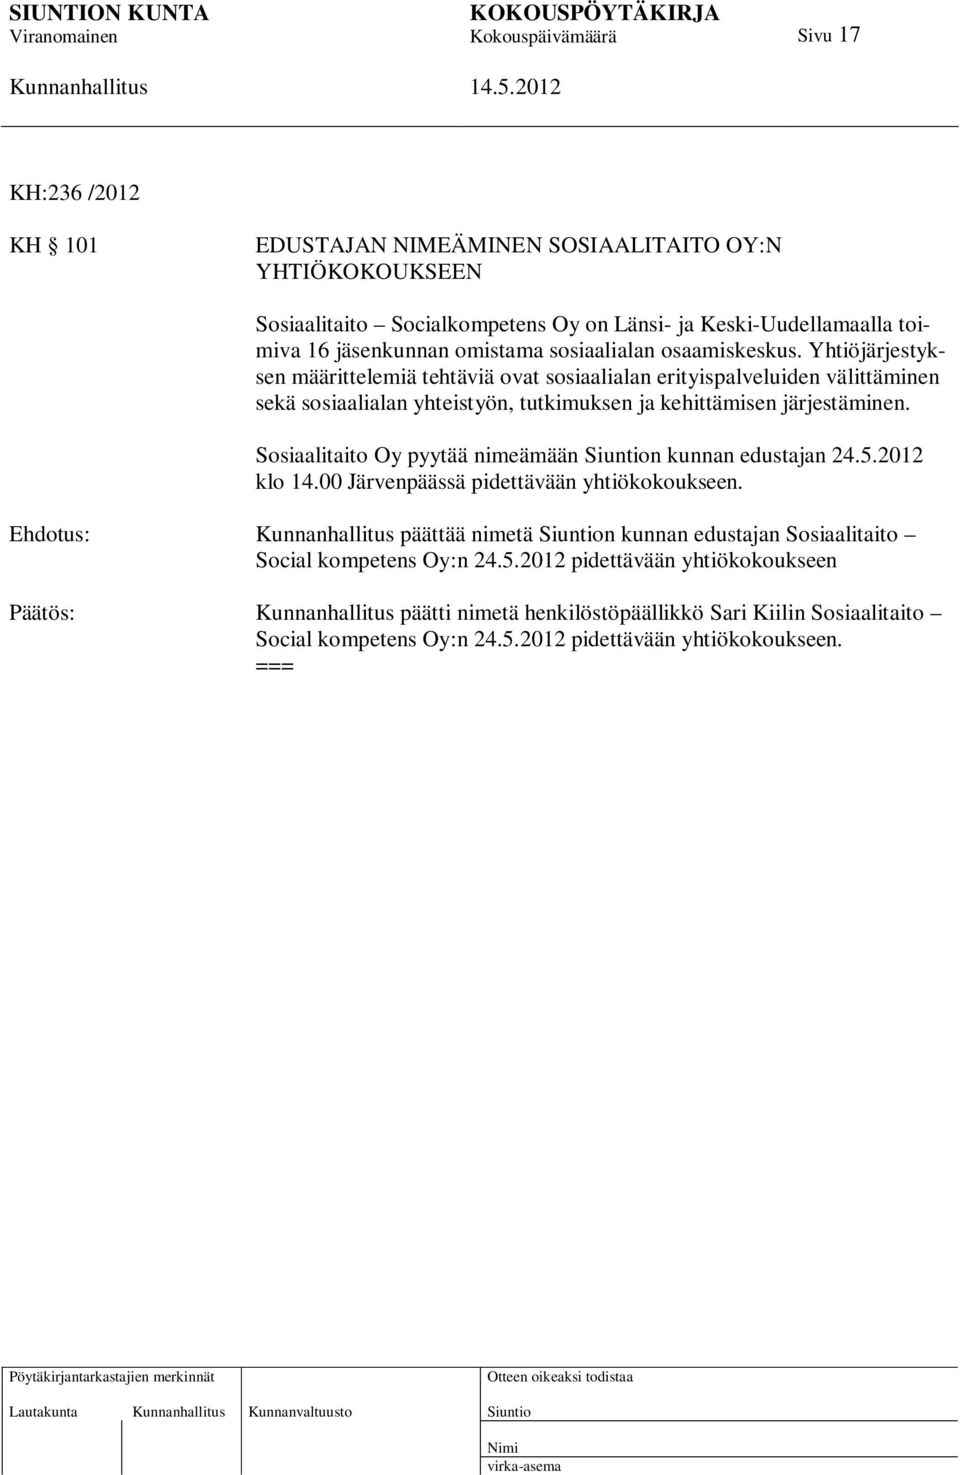 Sosiaalitaito Oy pyytää nimeämään n kunnan edustajan 24.5.2012 klo 14.00 Järvenpäässä pidettävään yhtiökokoukseen.